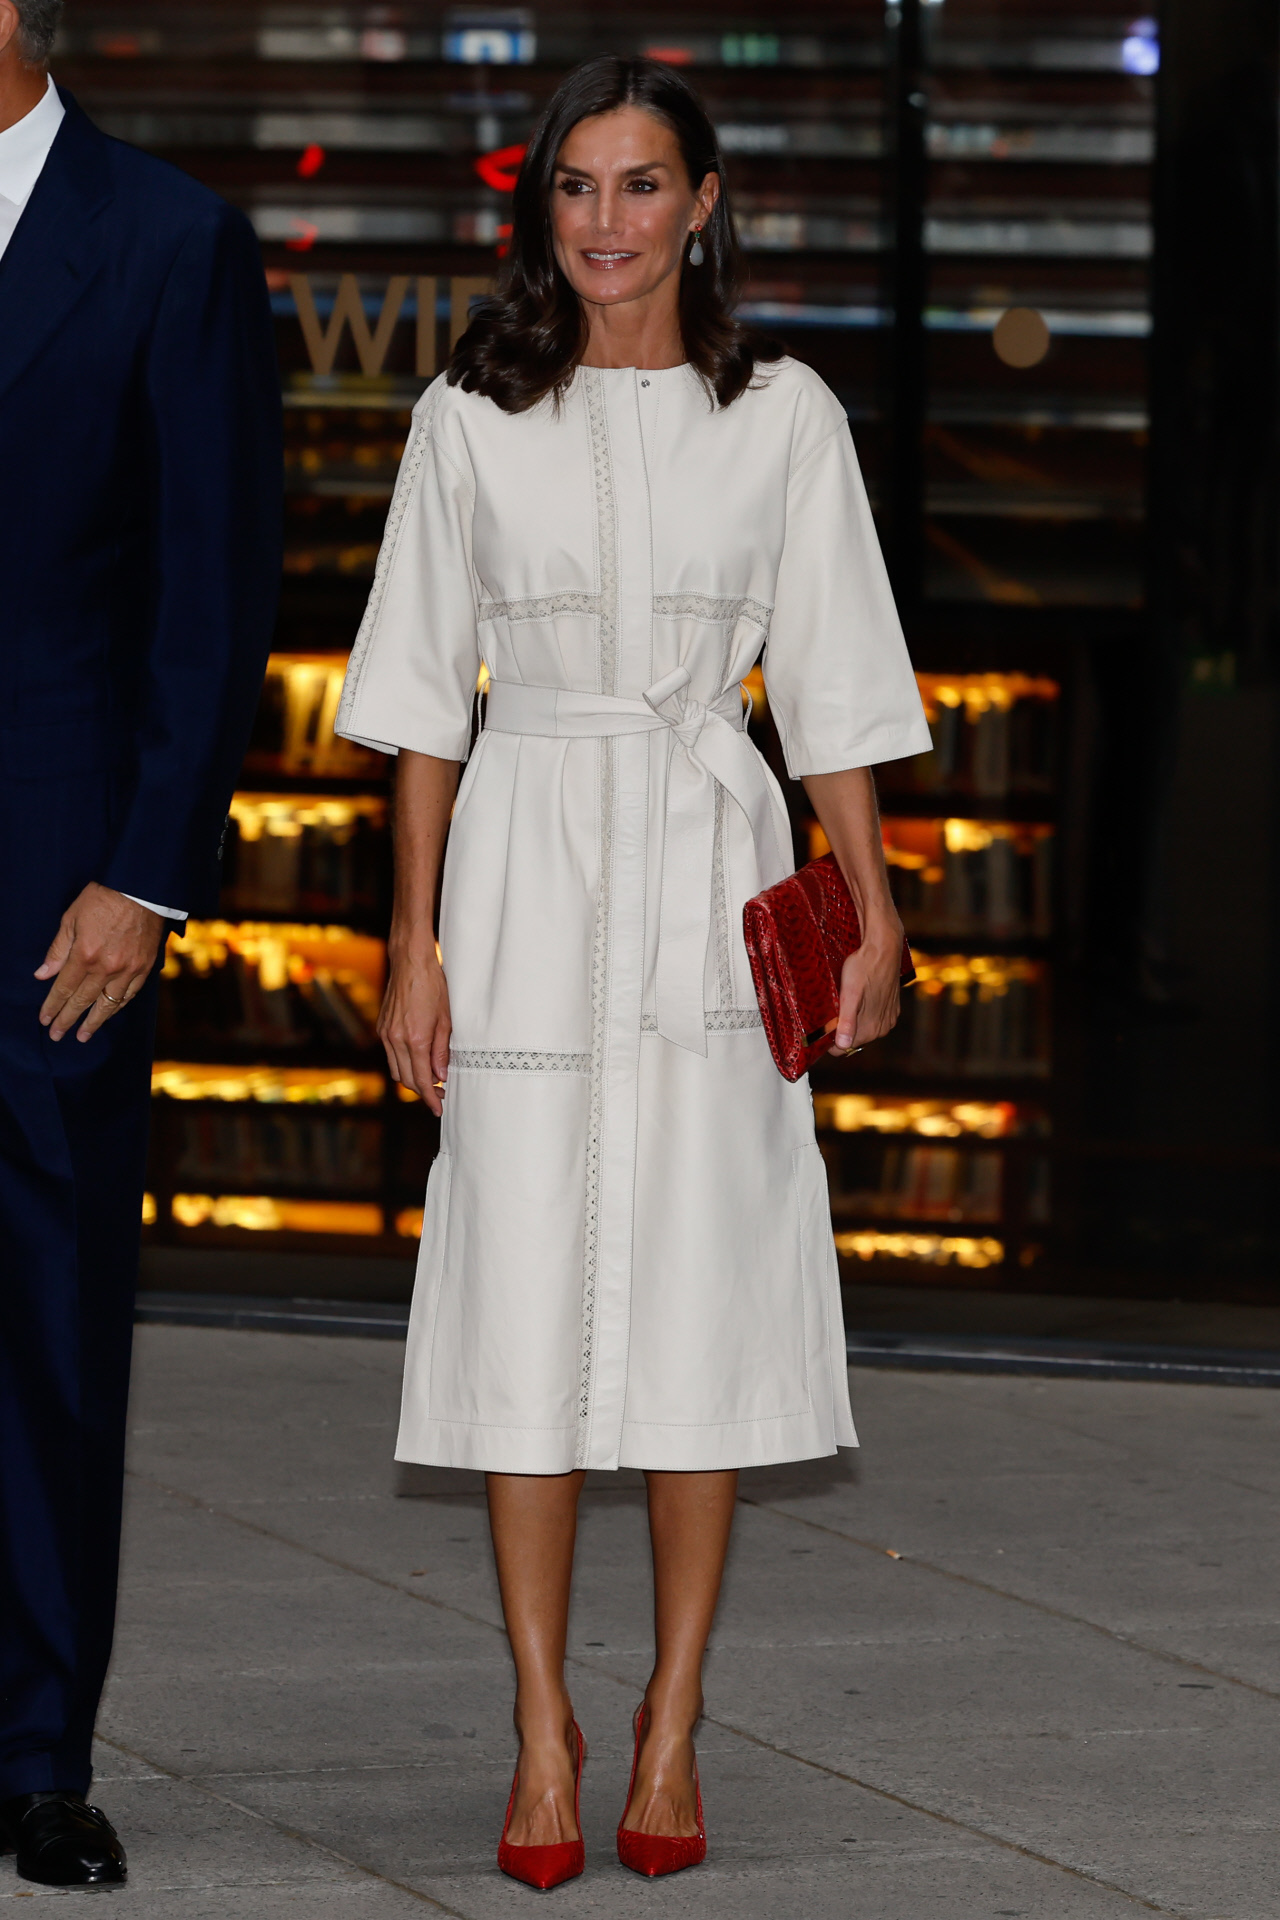 La reina Letizia, muy elegante con un vestido blanco y accesorios rojos.